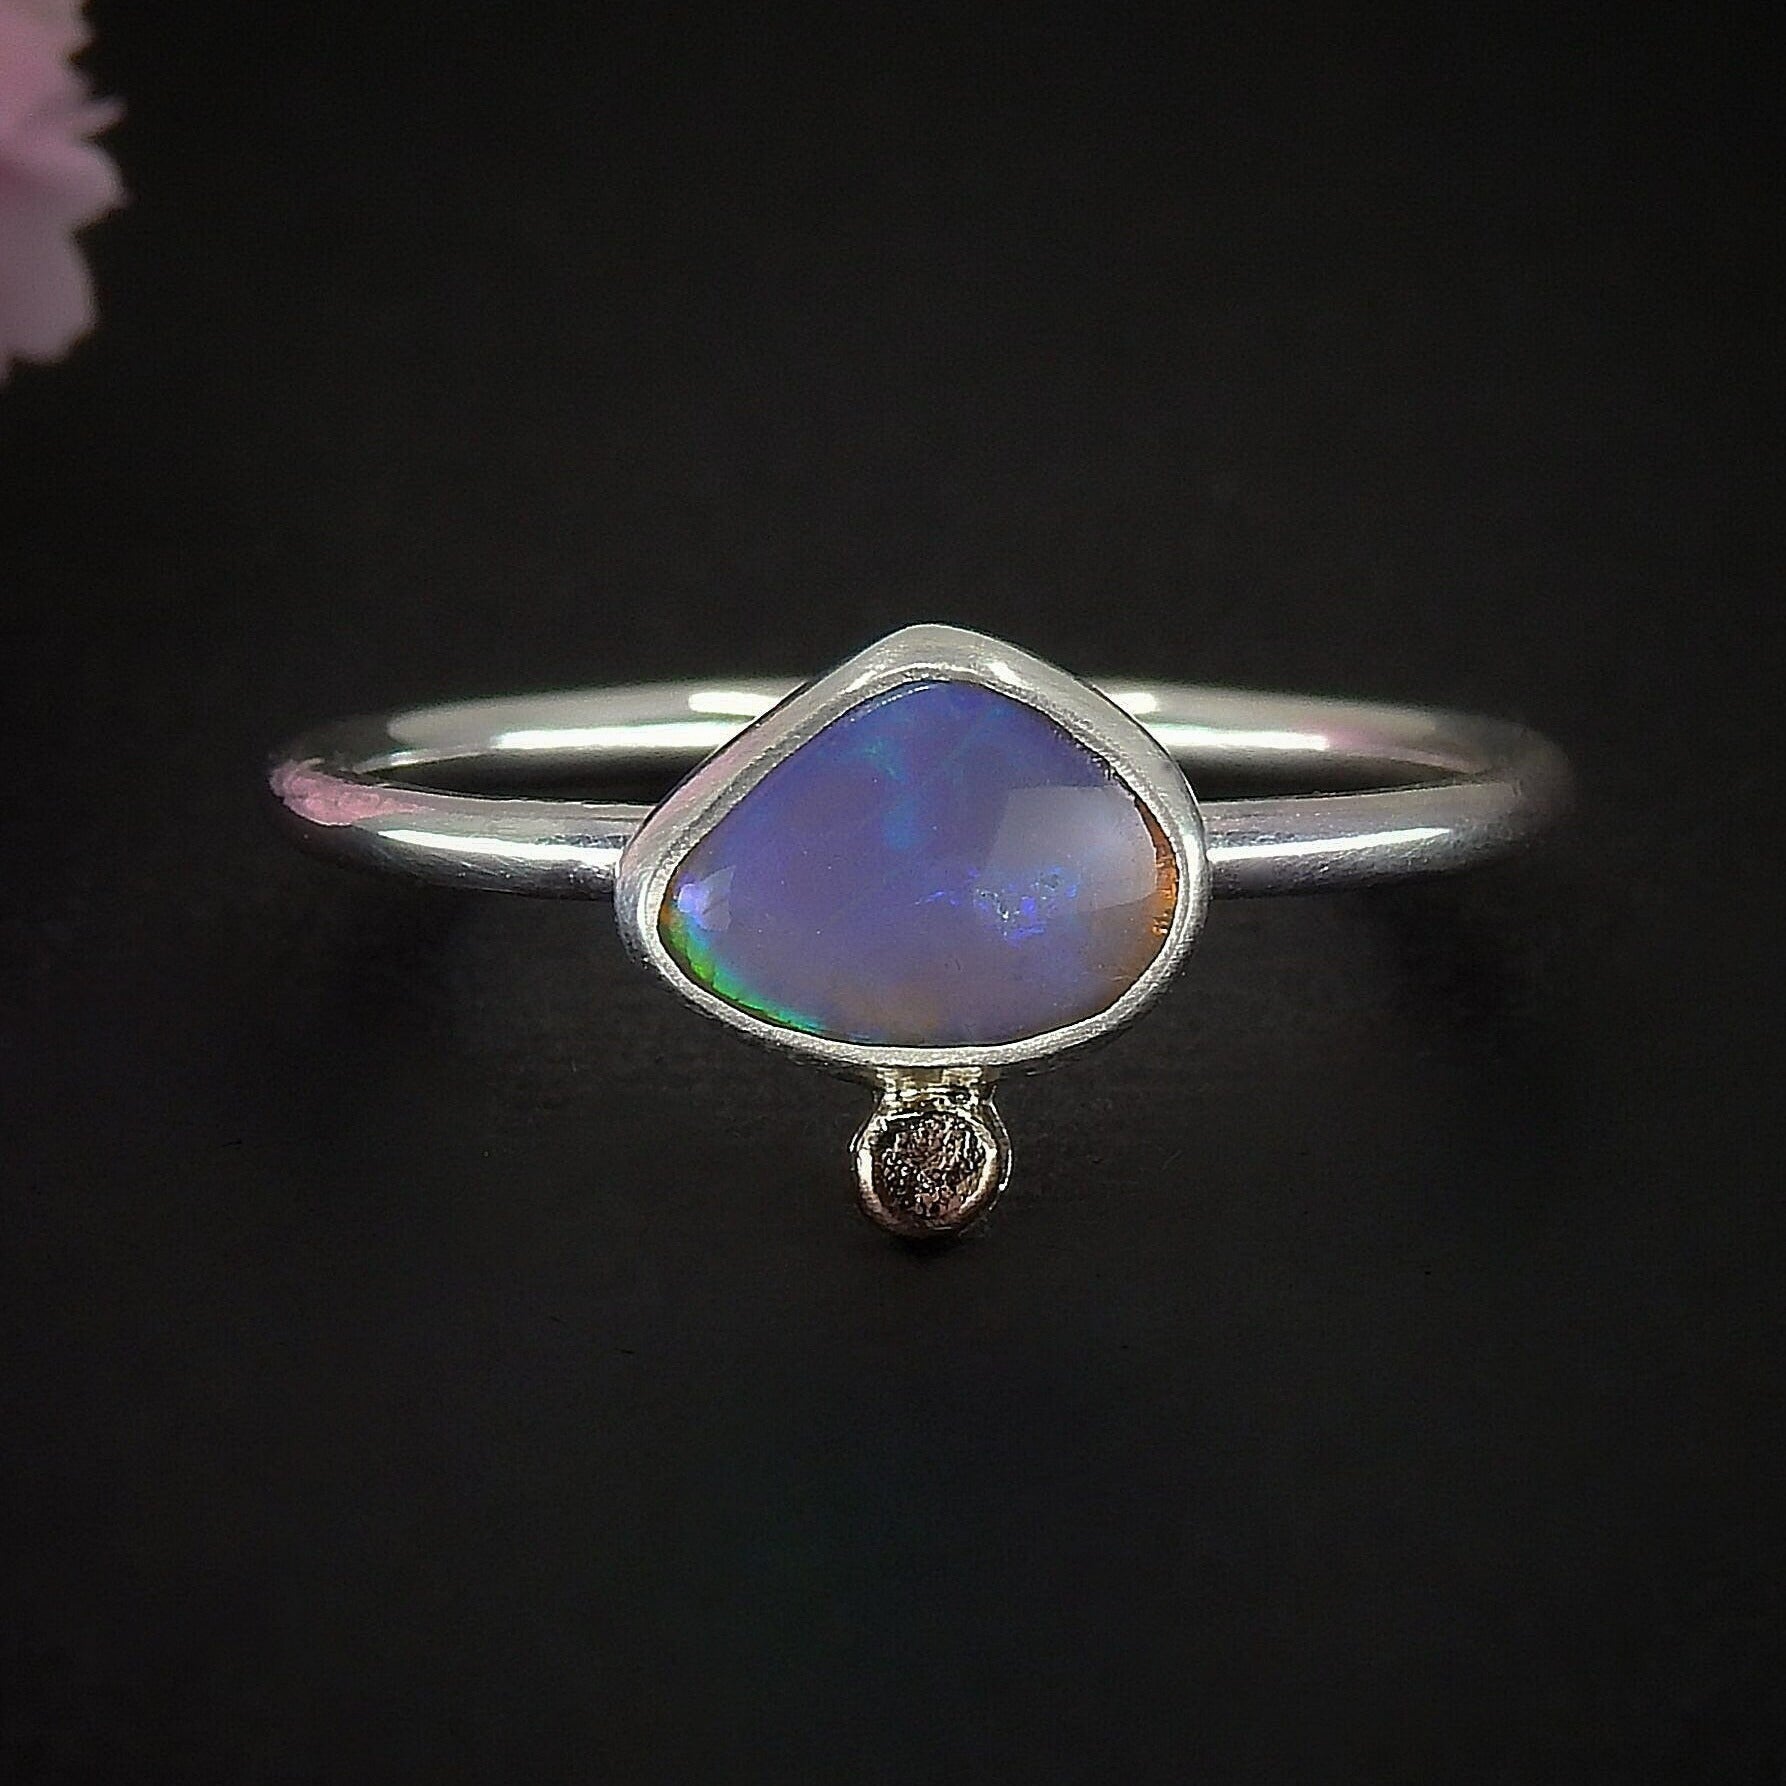 Australian Crystal Opal Ring - Size 8 1/2 